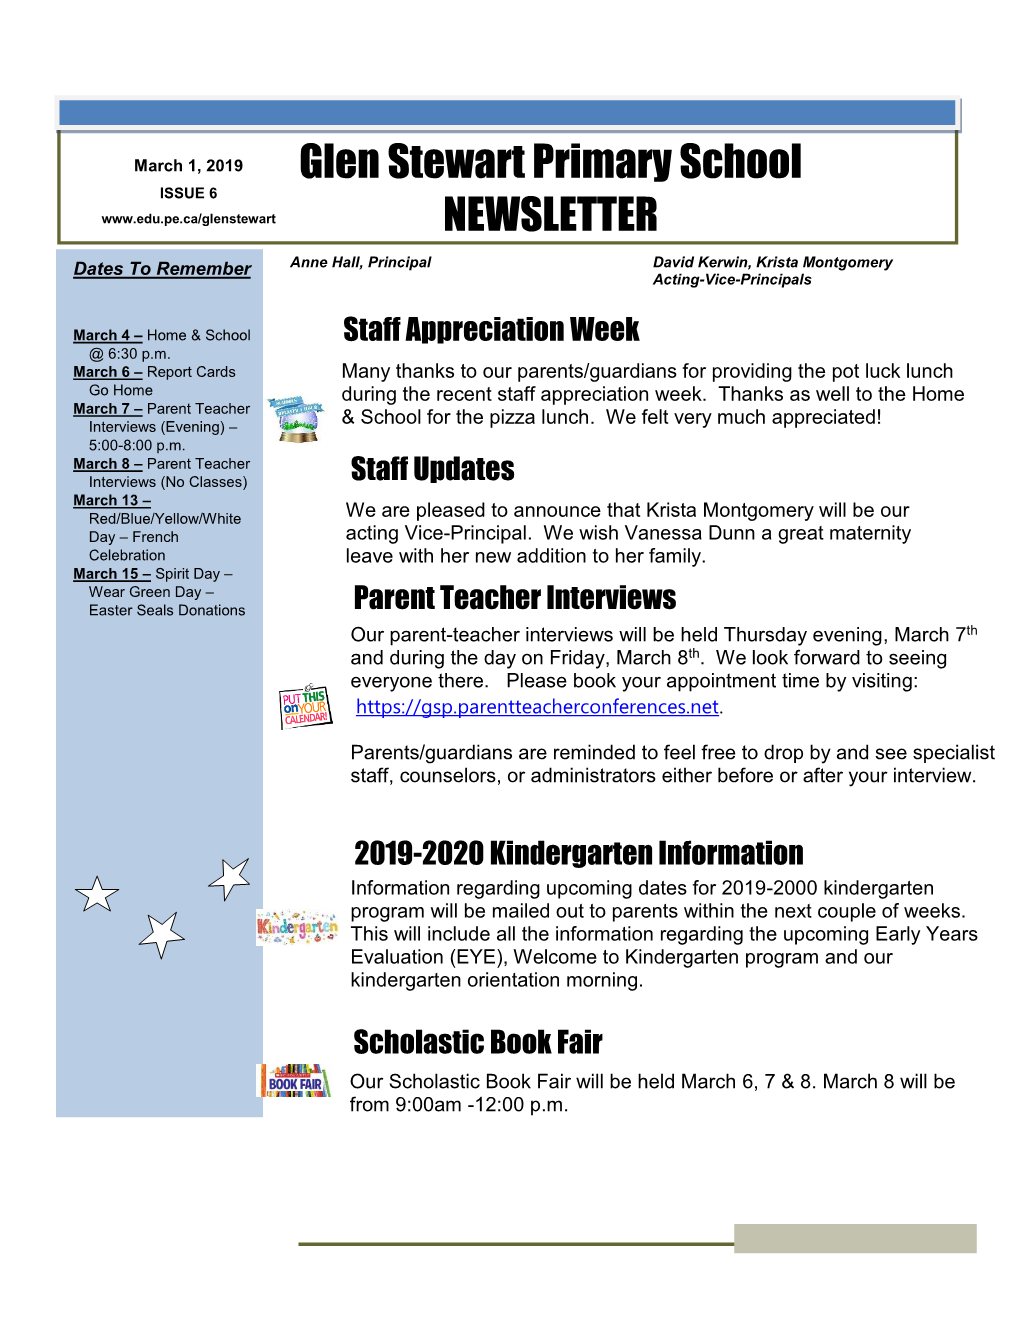 Glen Stewart Primary School Newsletter Page 2 of 3